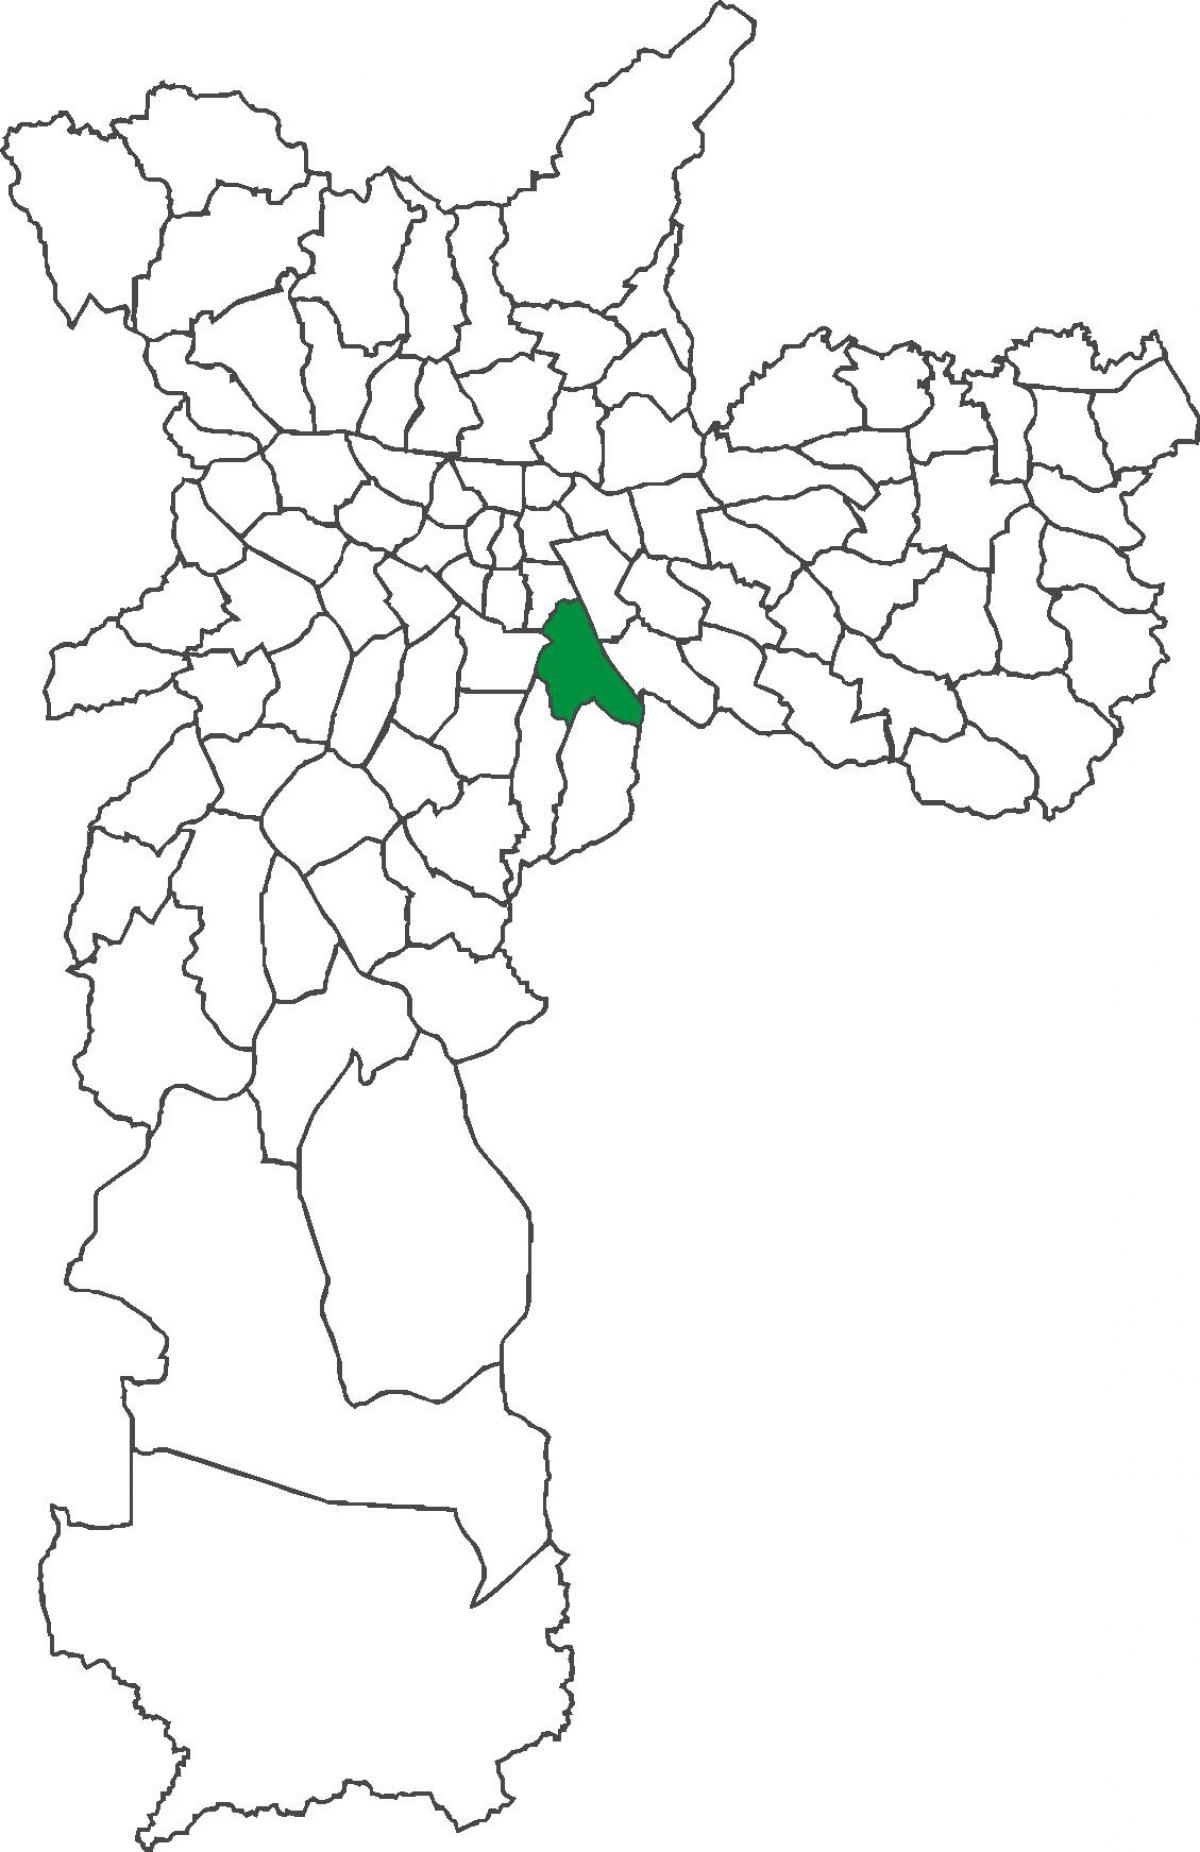 რუკა Ipiranga უბანი